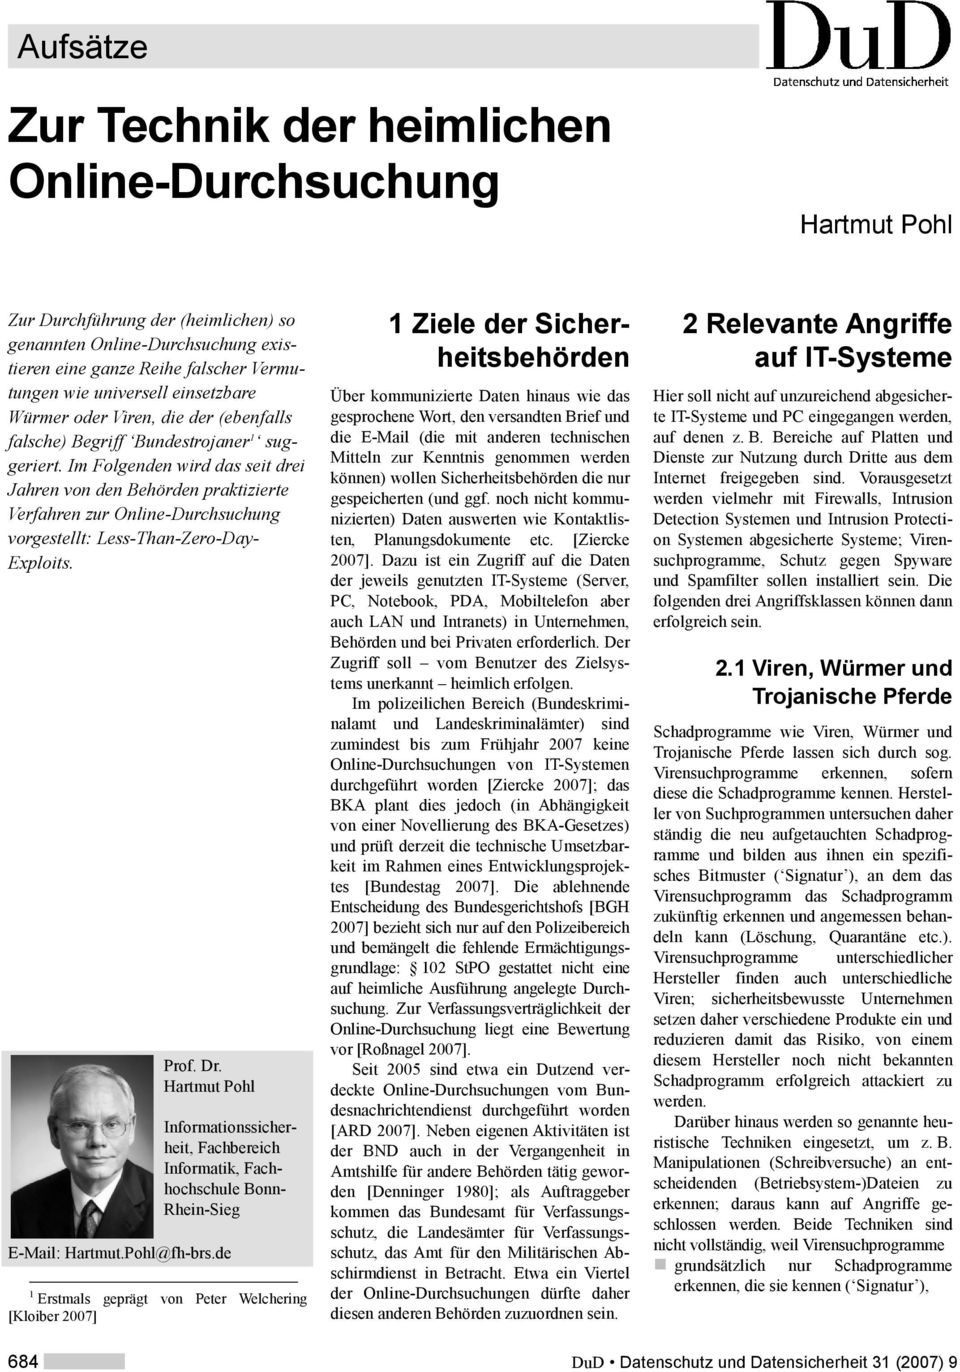 Hartmut Pohl Informationssicherheit, Fachbereich Informatik, Fachhochschule Bonn- Rhein-Sieg E-Mail: Hartmut.Pohl@fh-brs.